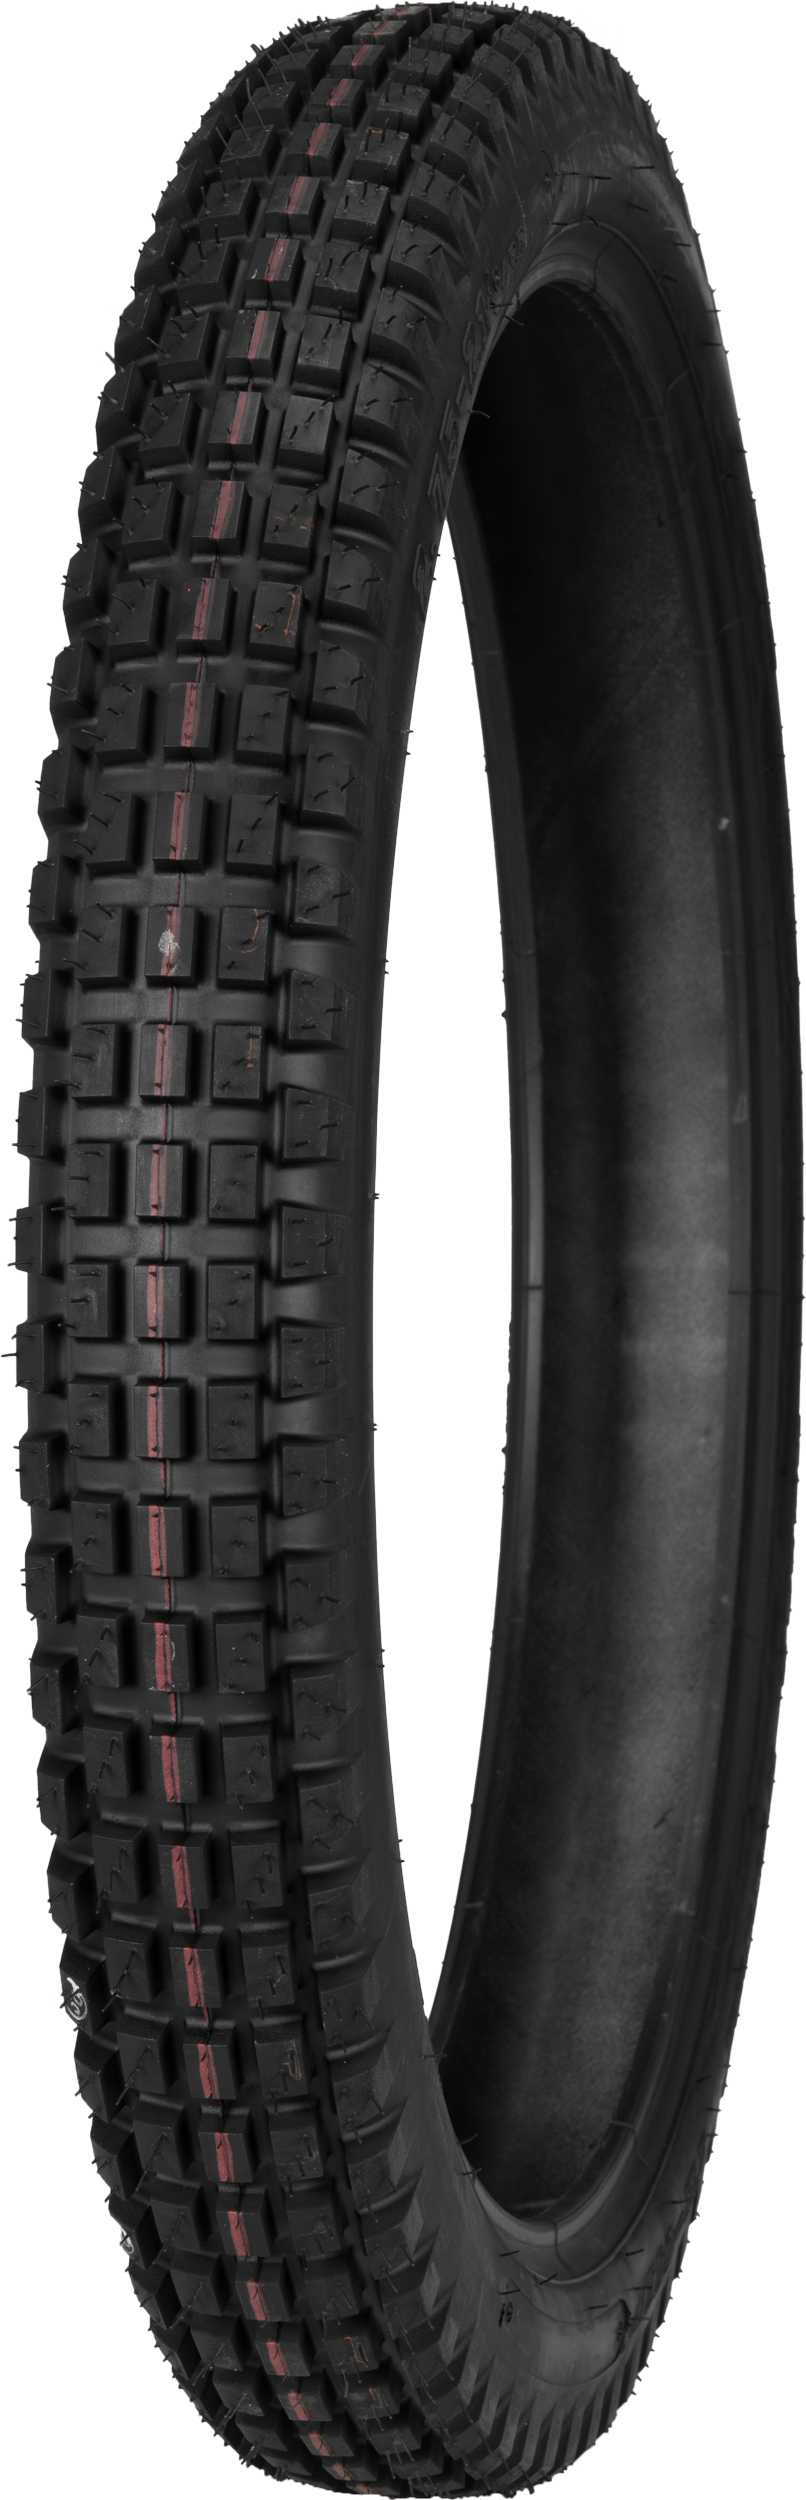 IRC Tire Tr-011f Pro Front 2.75-21 4pr Bias Tt 101565